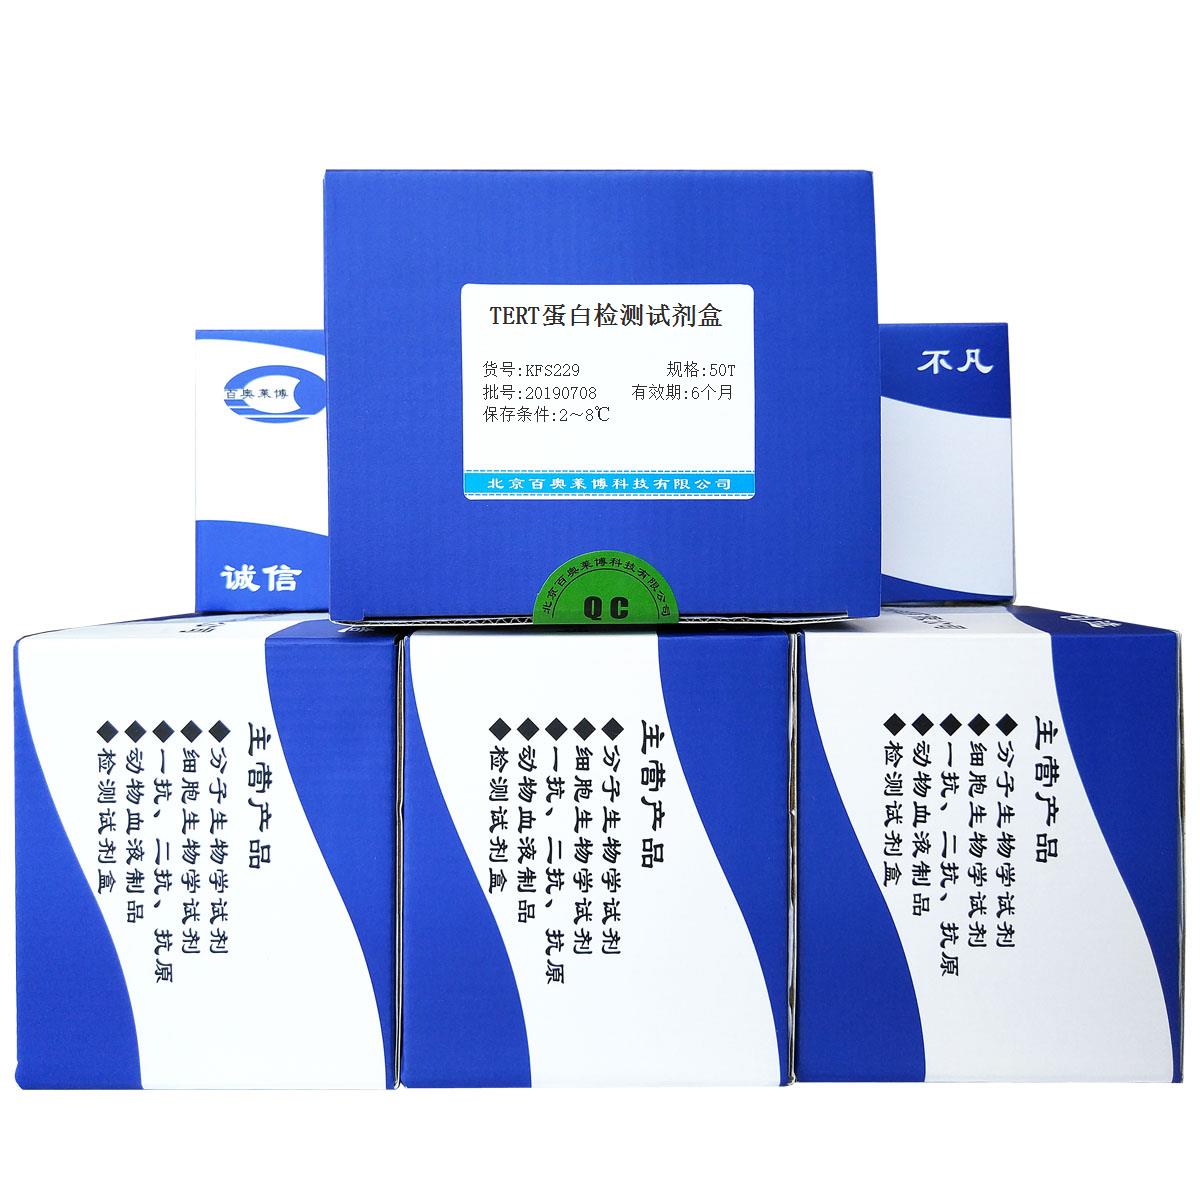 TERT蛋白检测试剂盒北京供应商